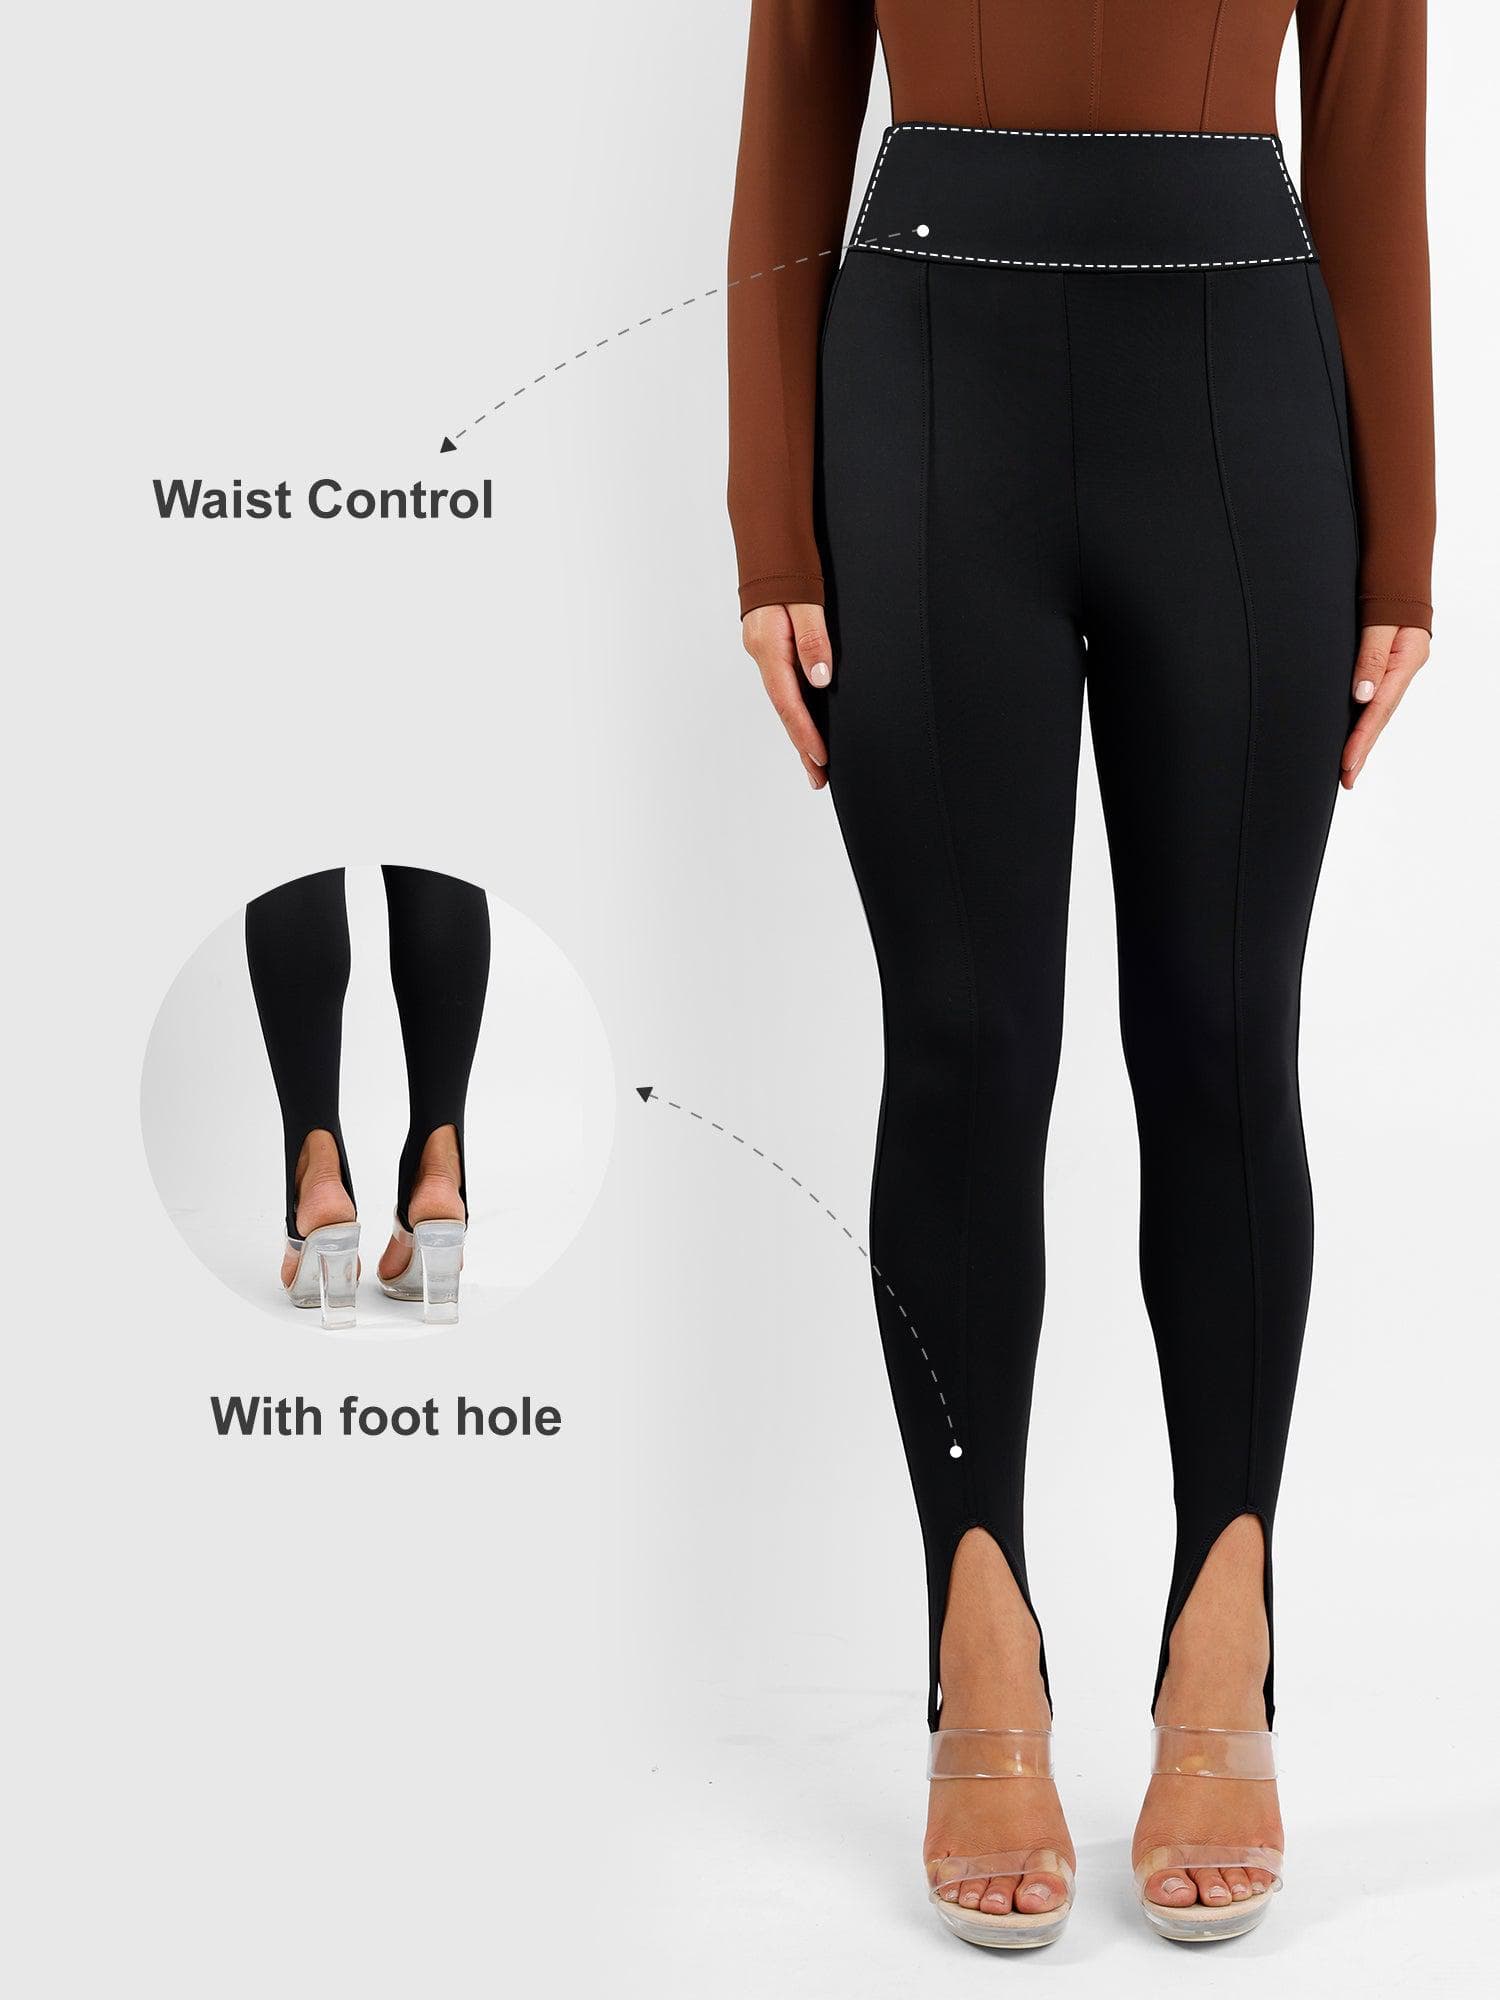 Buy Nike Women's Yoga Luxe High-Waisted 7/8 Infinalon Leggings (Plus Size)  Black in KSA -SSS